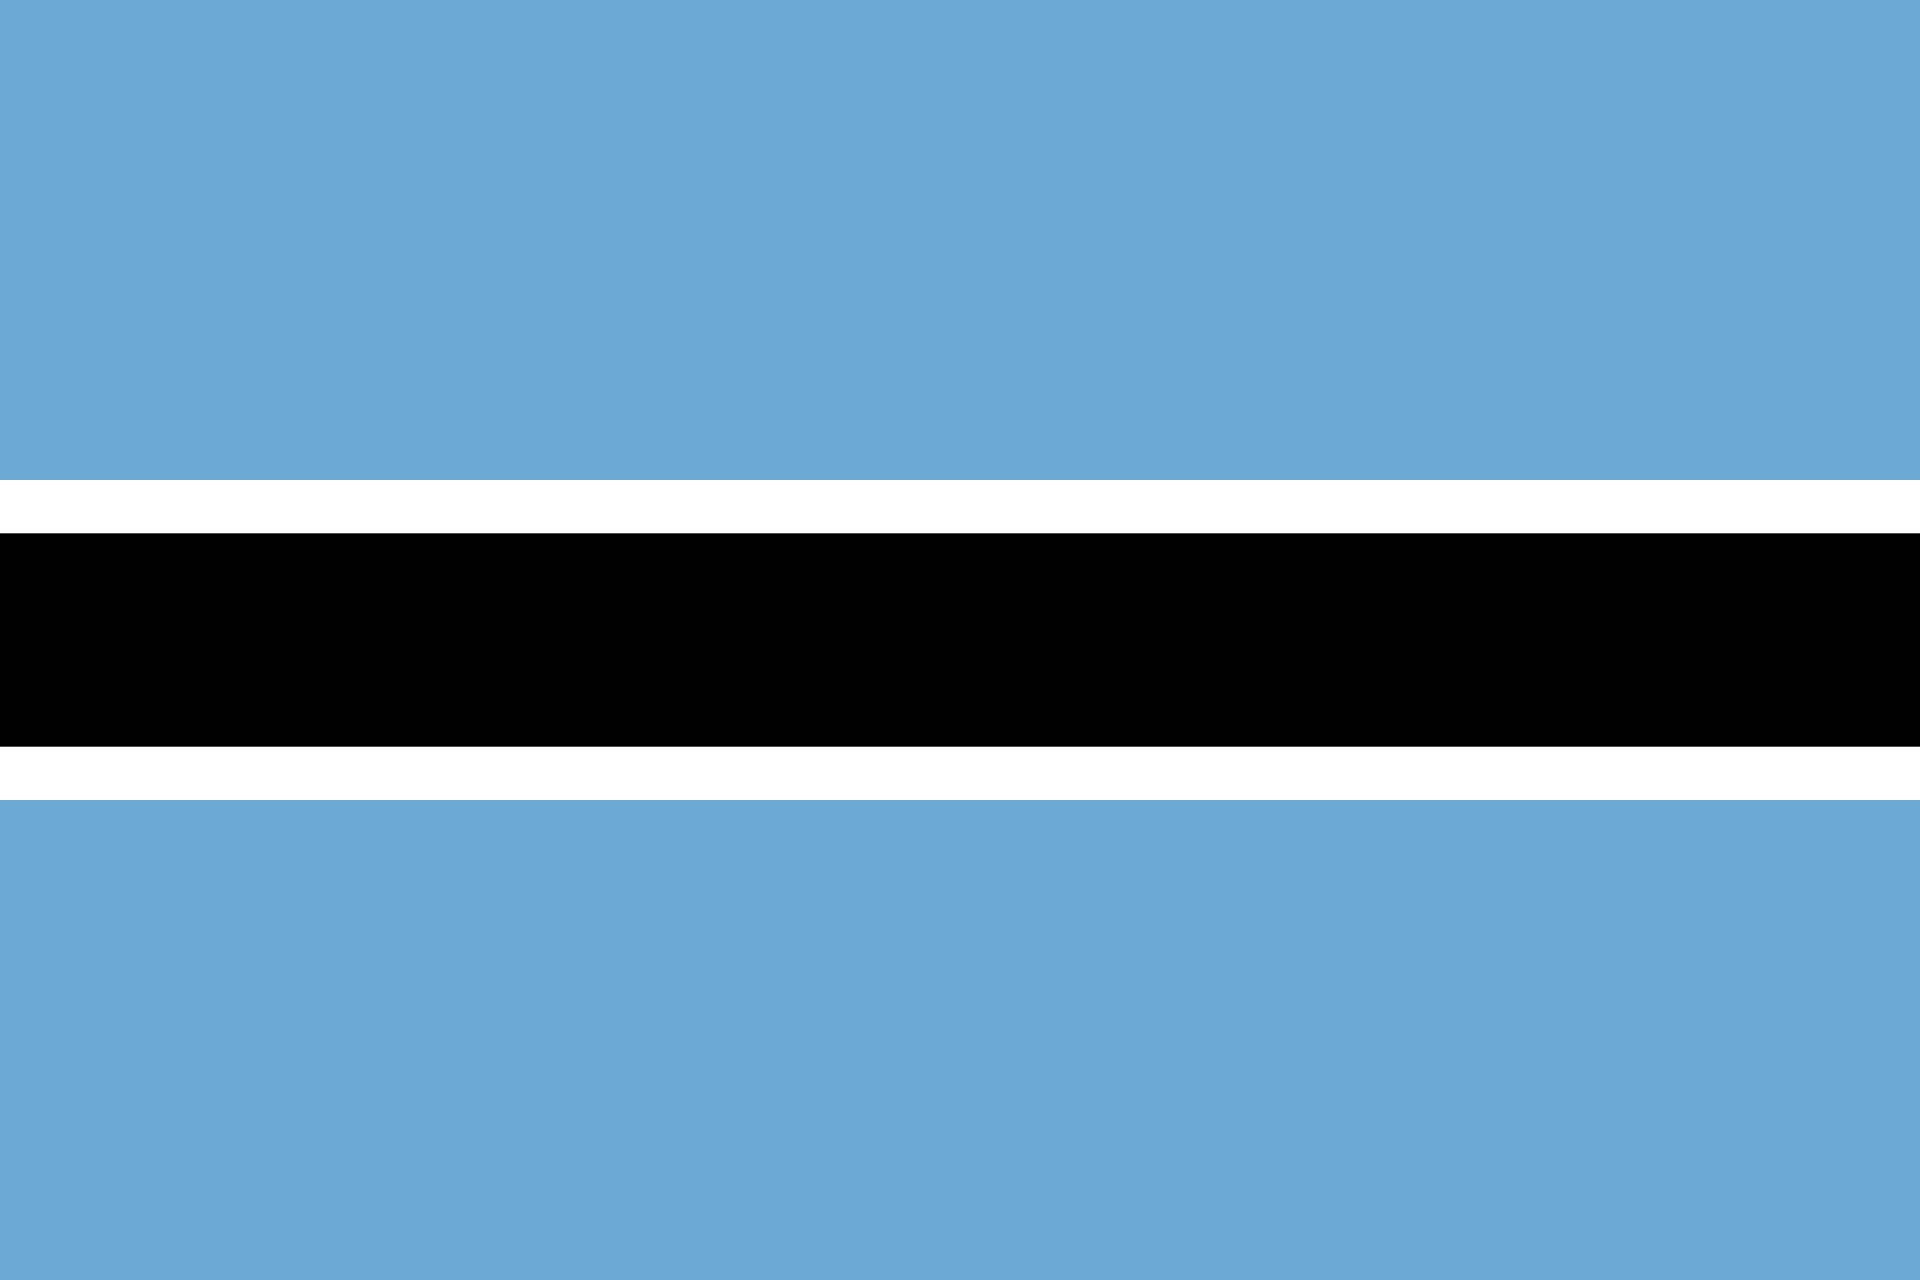 बोत्सवाना का झंडा